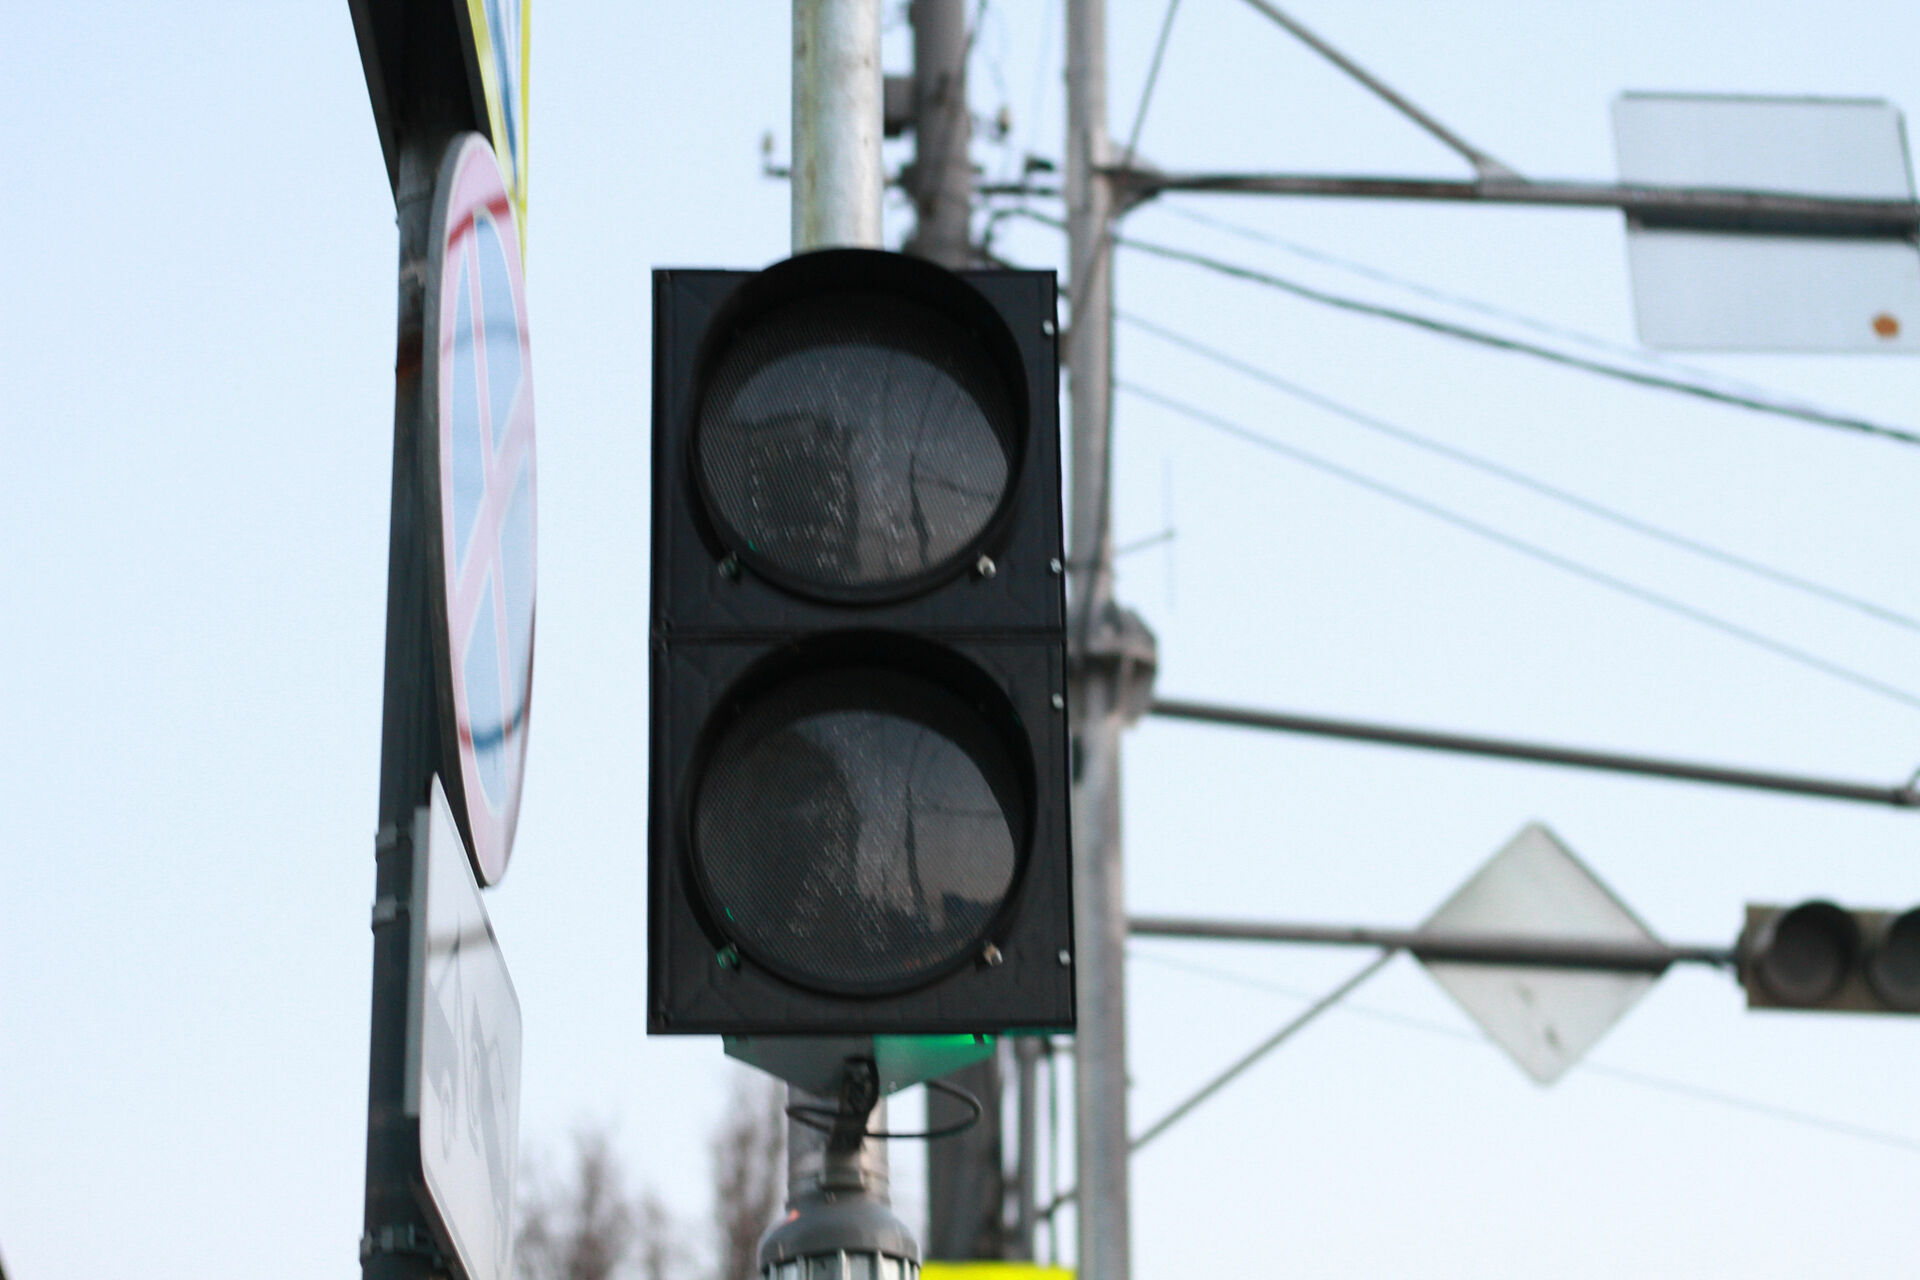 Светофор в Петрозаводске, на котором жестко сбили ребенка, не работает больше недели